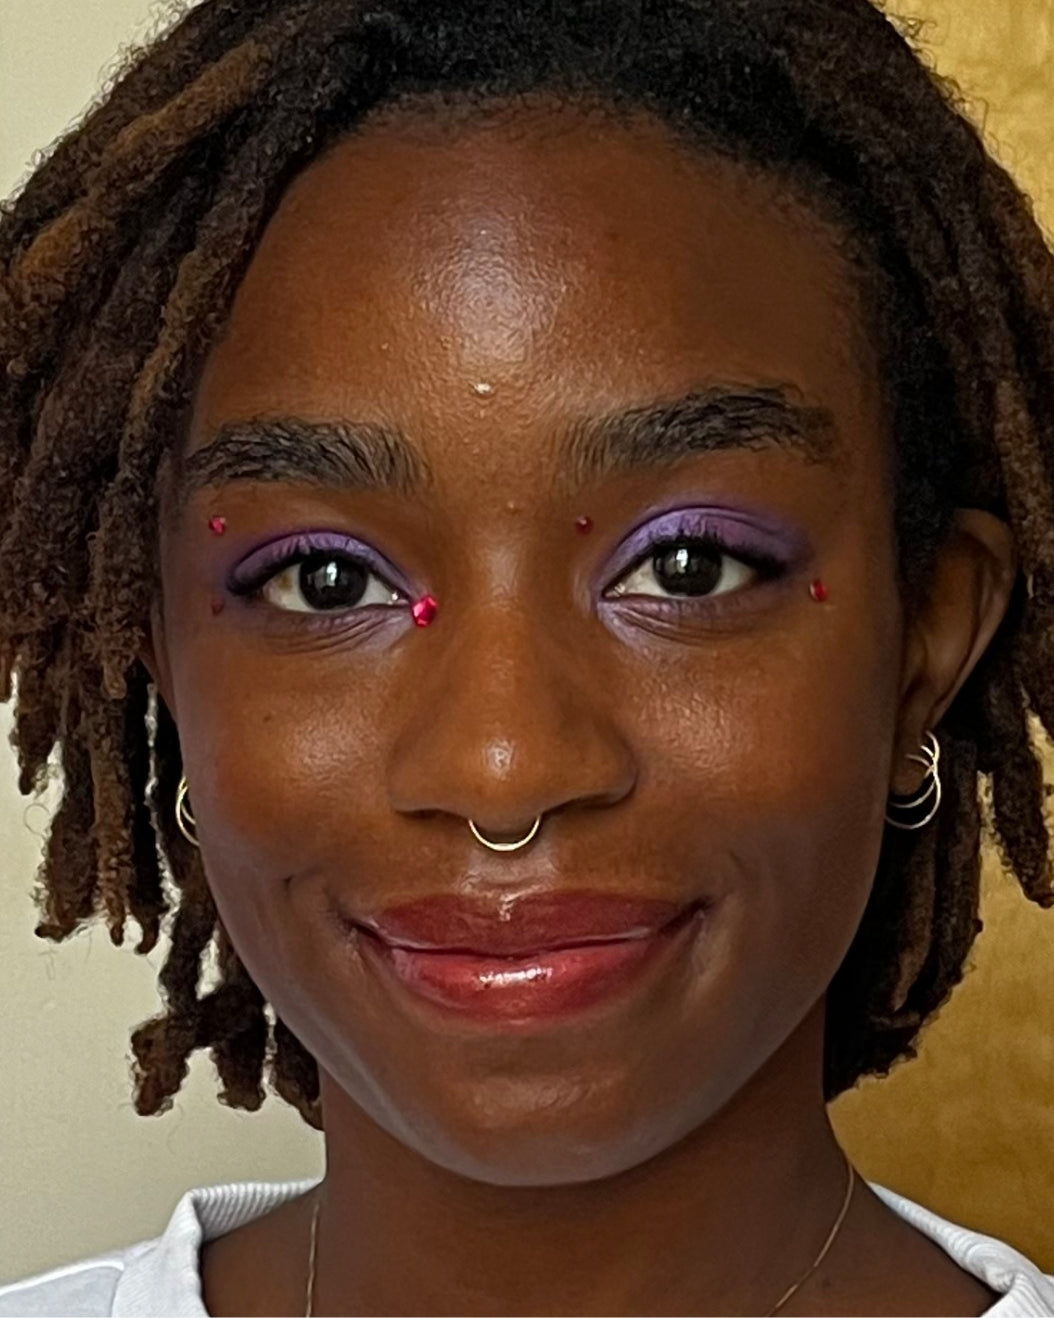 Model wears purple, shimmery jewel-toned makeup